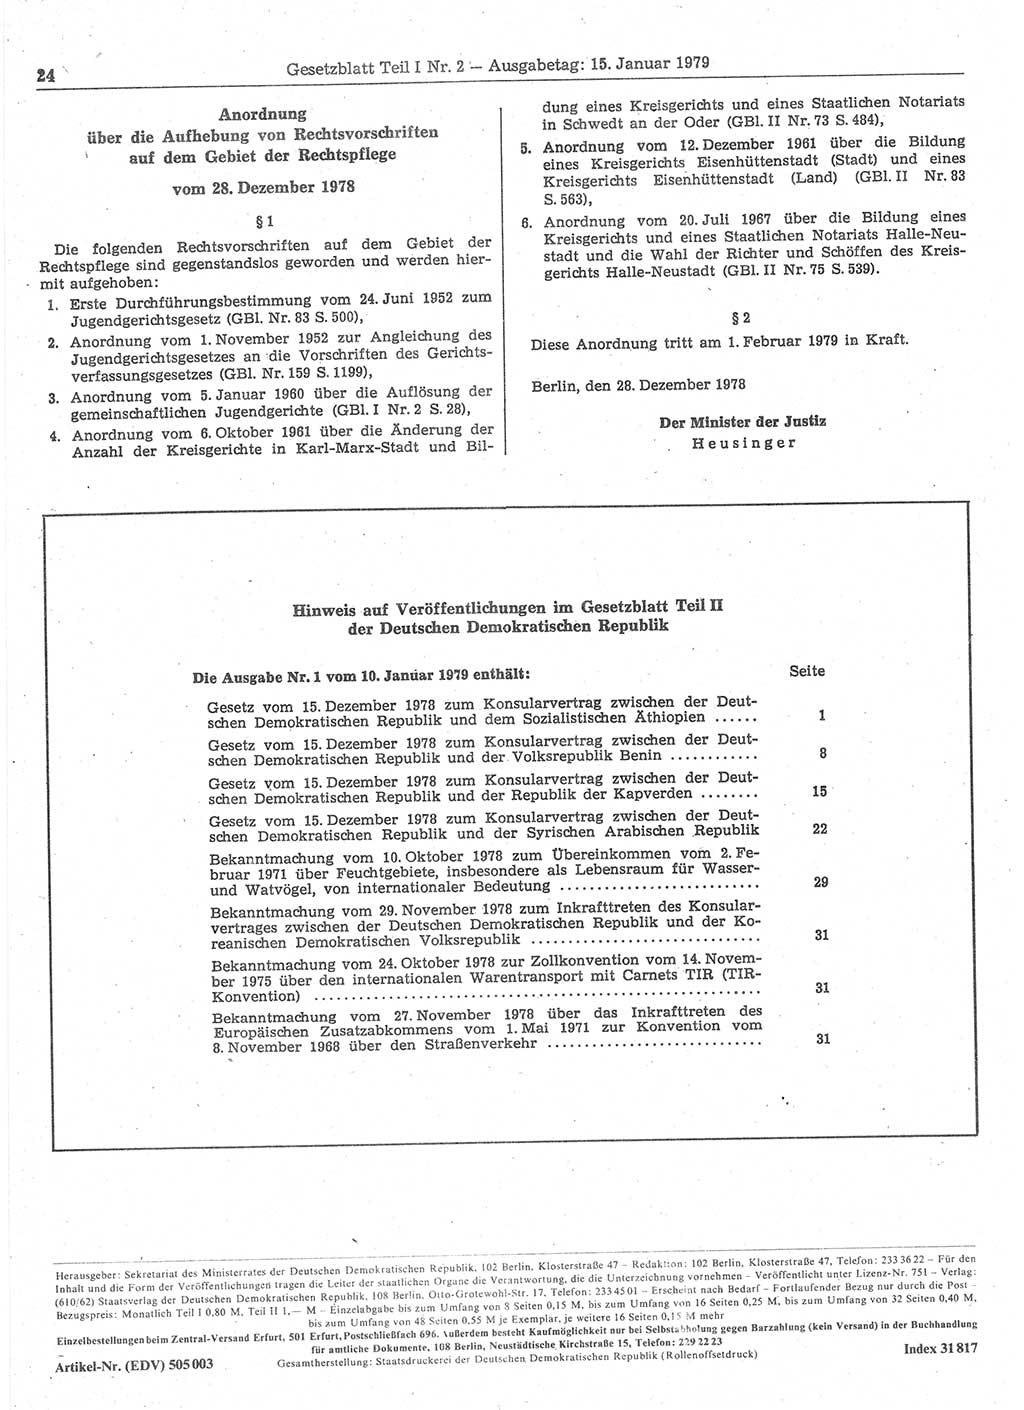 Gesetzblatt (GBl.) der Deutschen Demokratischen Republik (DDR) Teil Ⅰ 1979, Seite 24 (GBl. DDR Ⅰ 1979, S. 24)